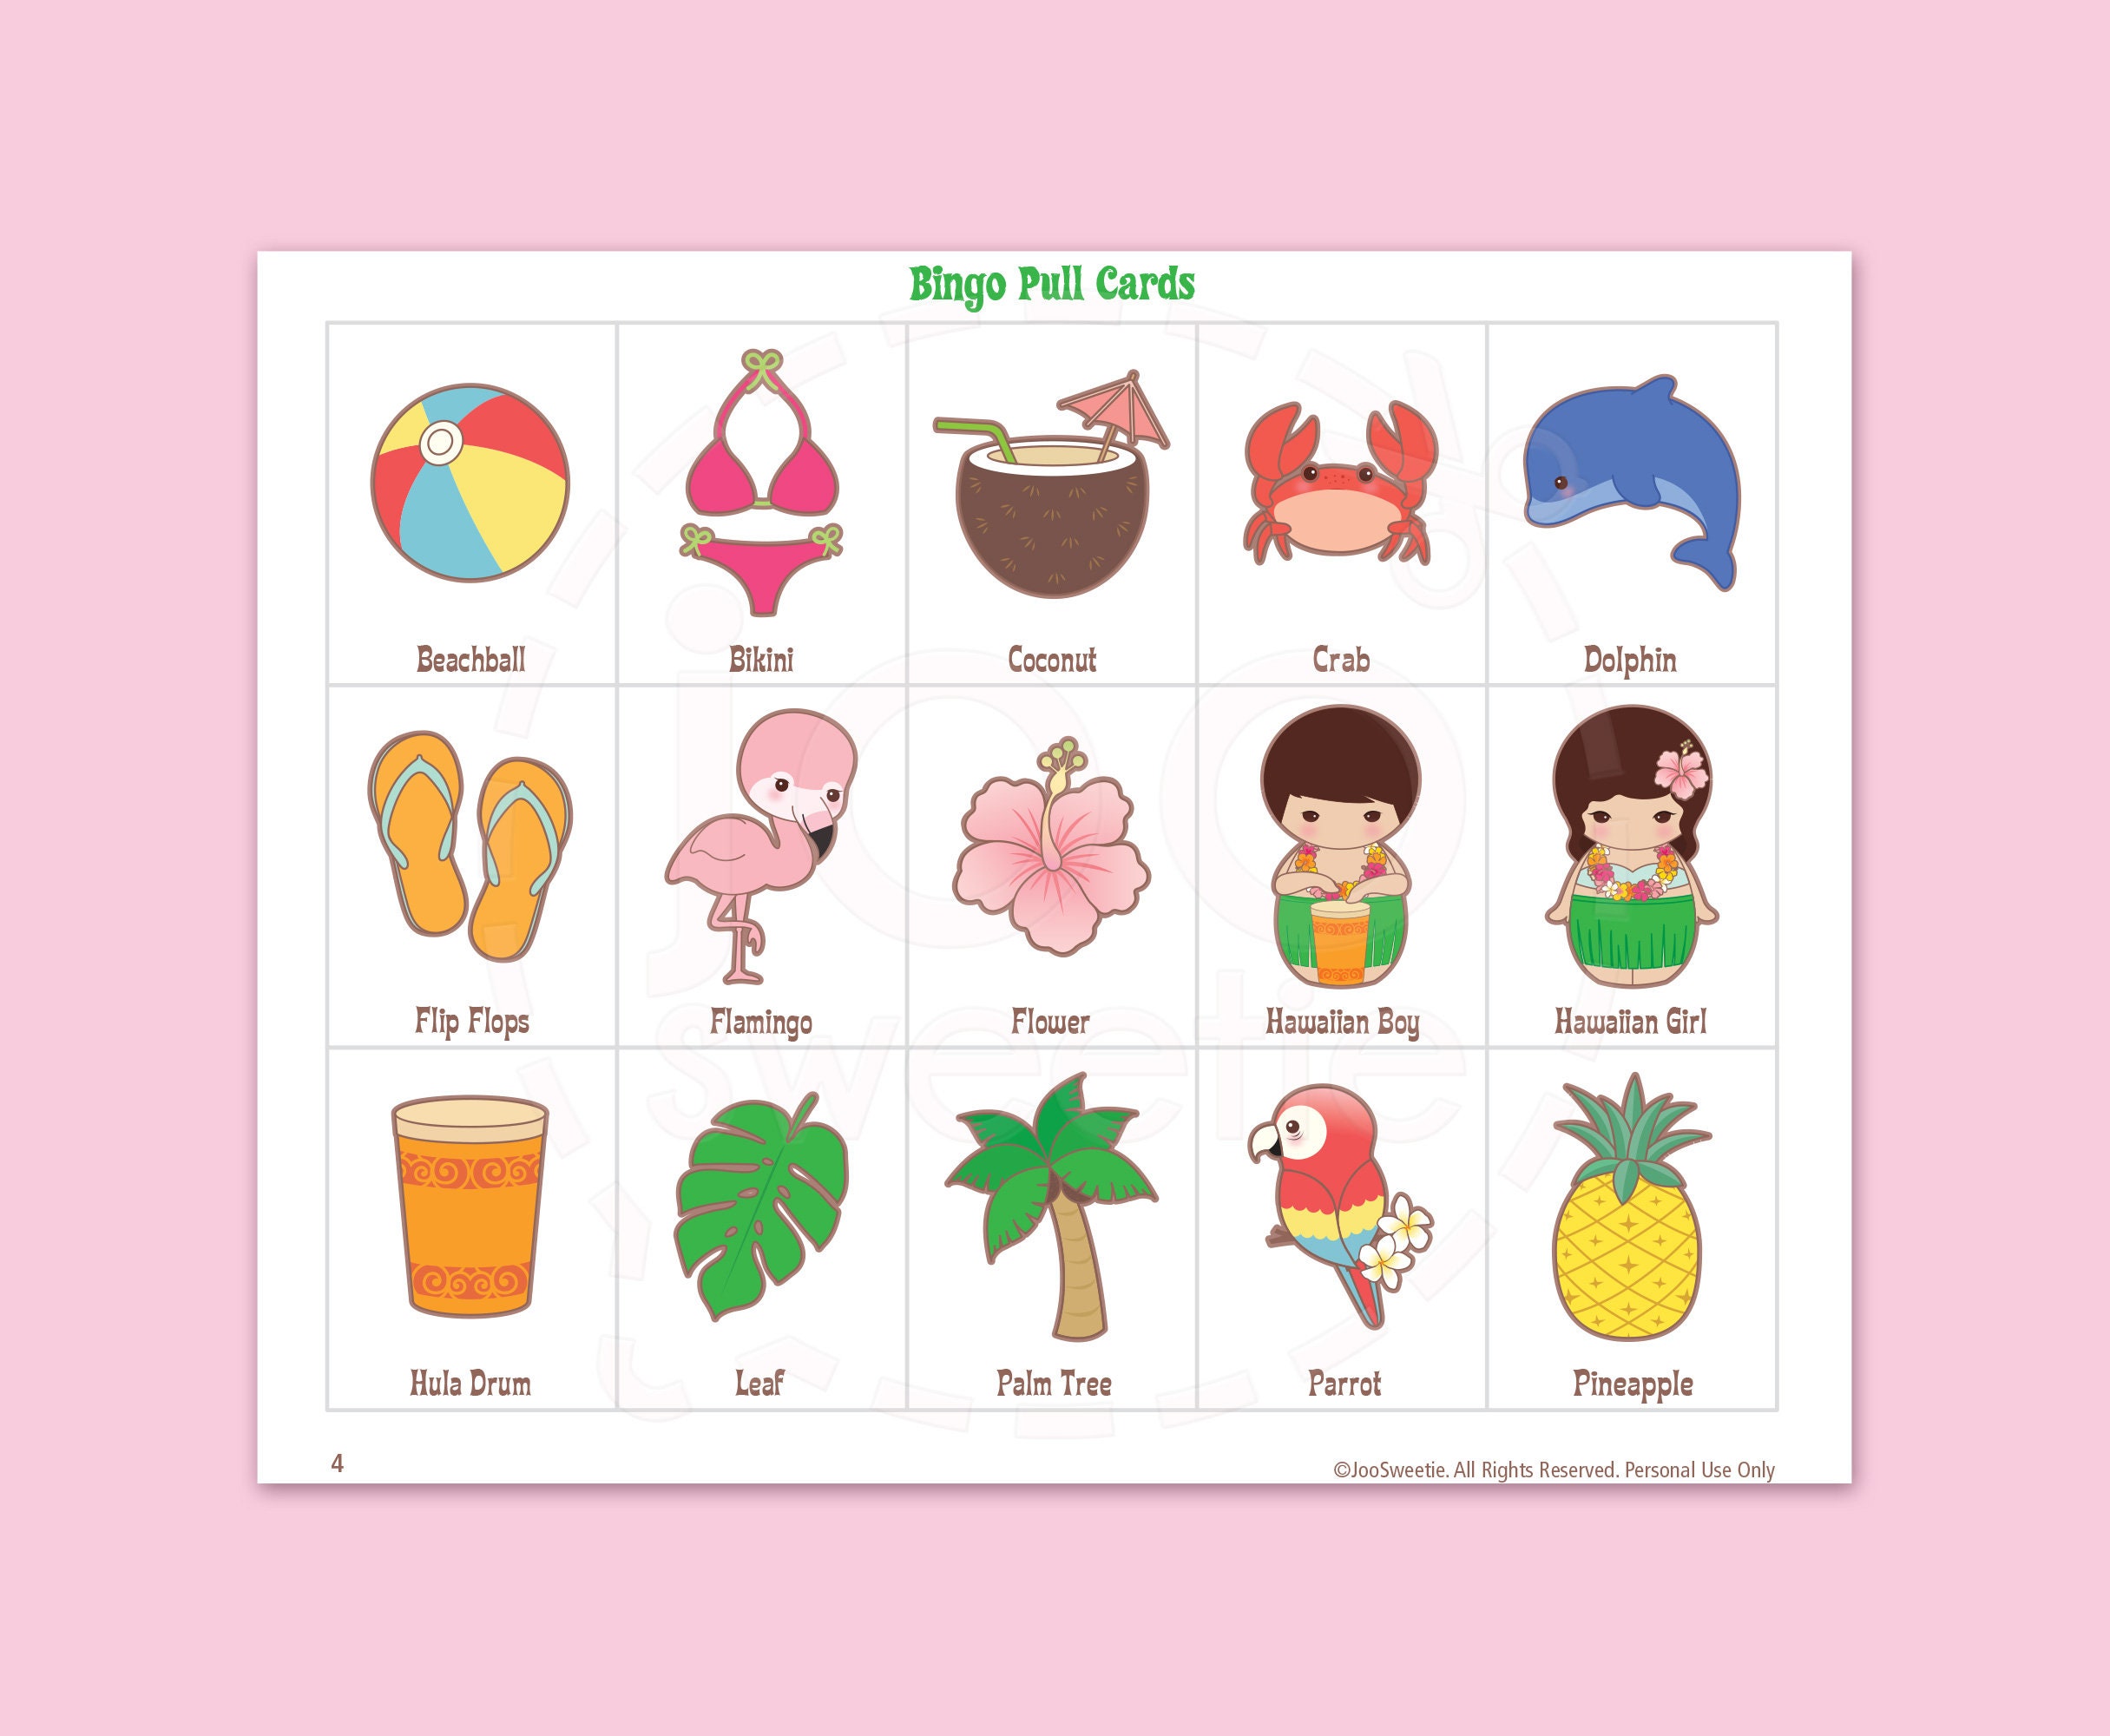 aloha-luau-hawaii-bingo-game-kitprintable-pdf-download-etsy